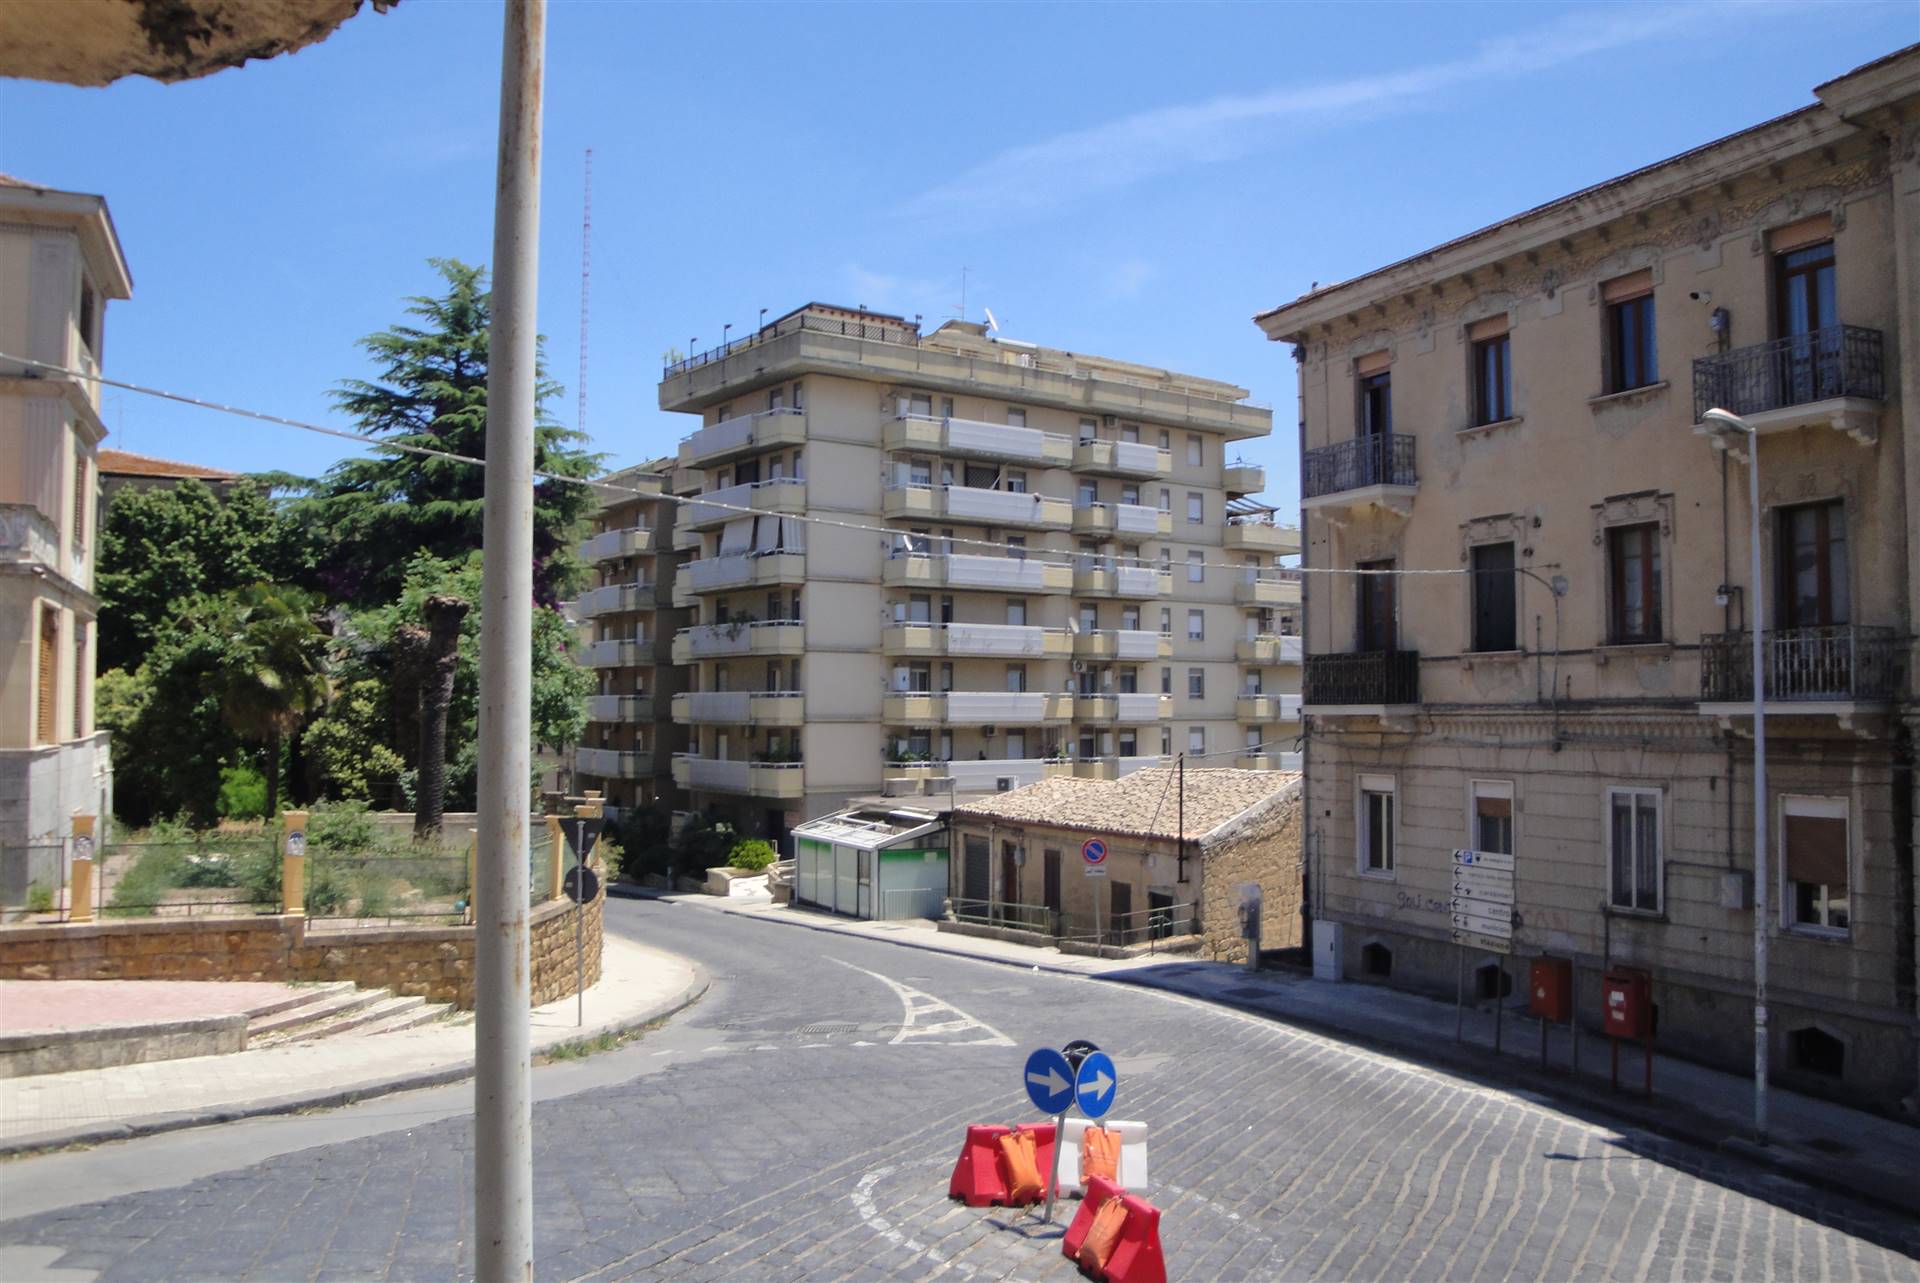 A Caltanissetta in Viale Trieste ,proponiamo in affitto due mini appartamenti confinanti ,posti al secondo piano, per uso studio medico arredati. Lo 